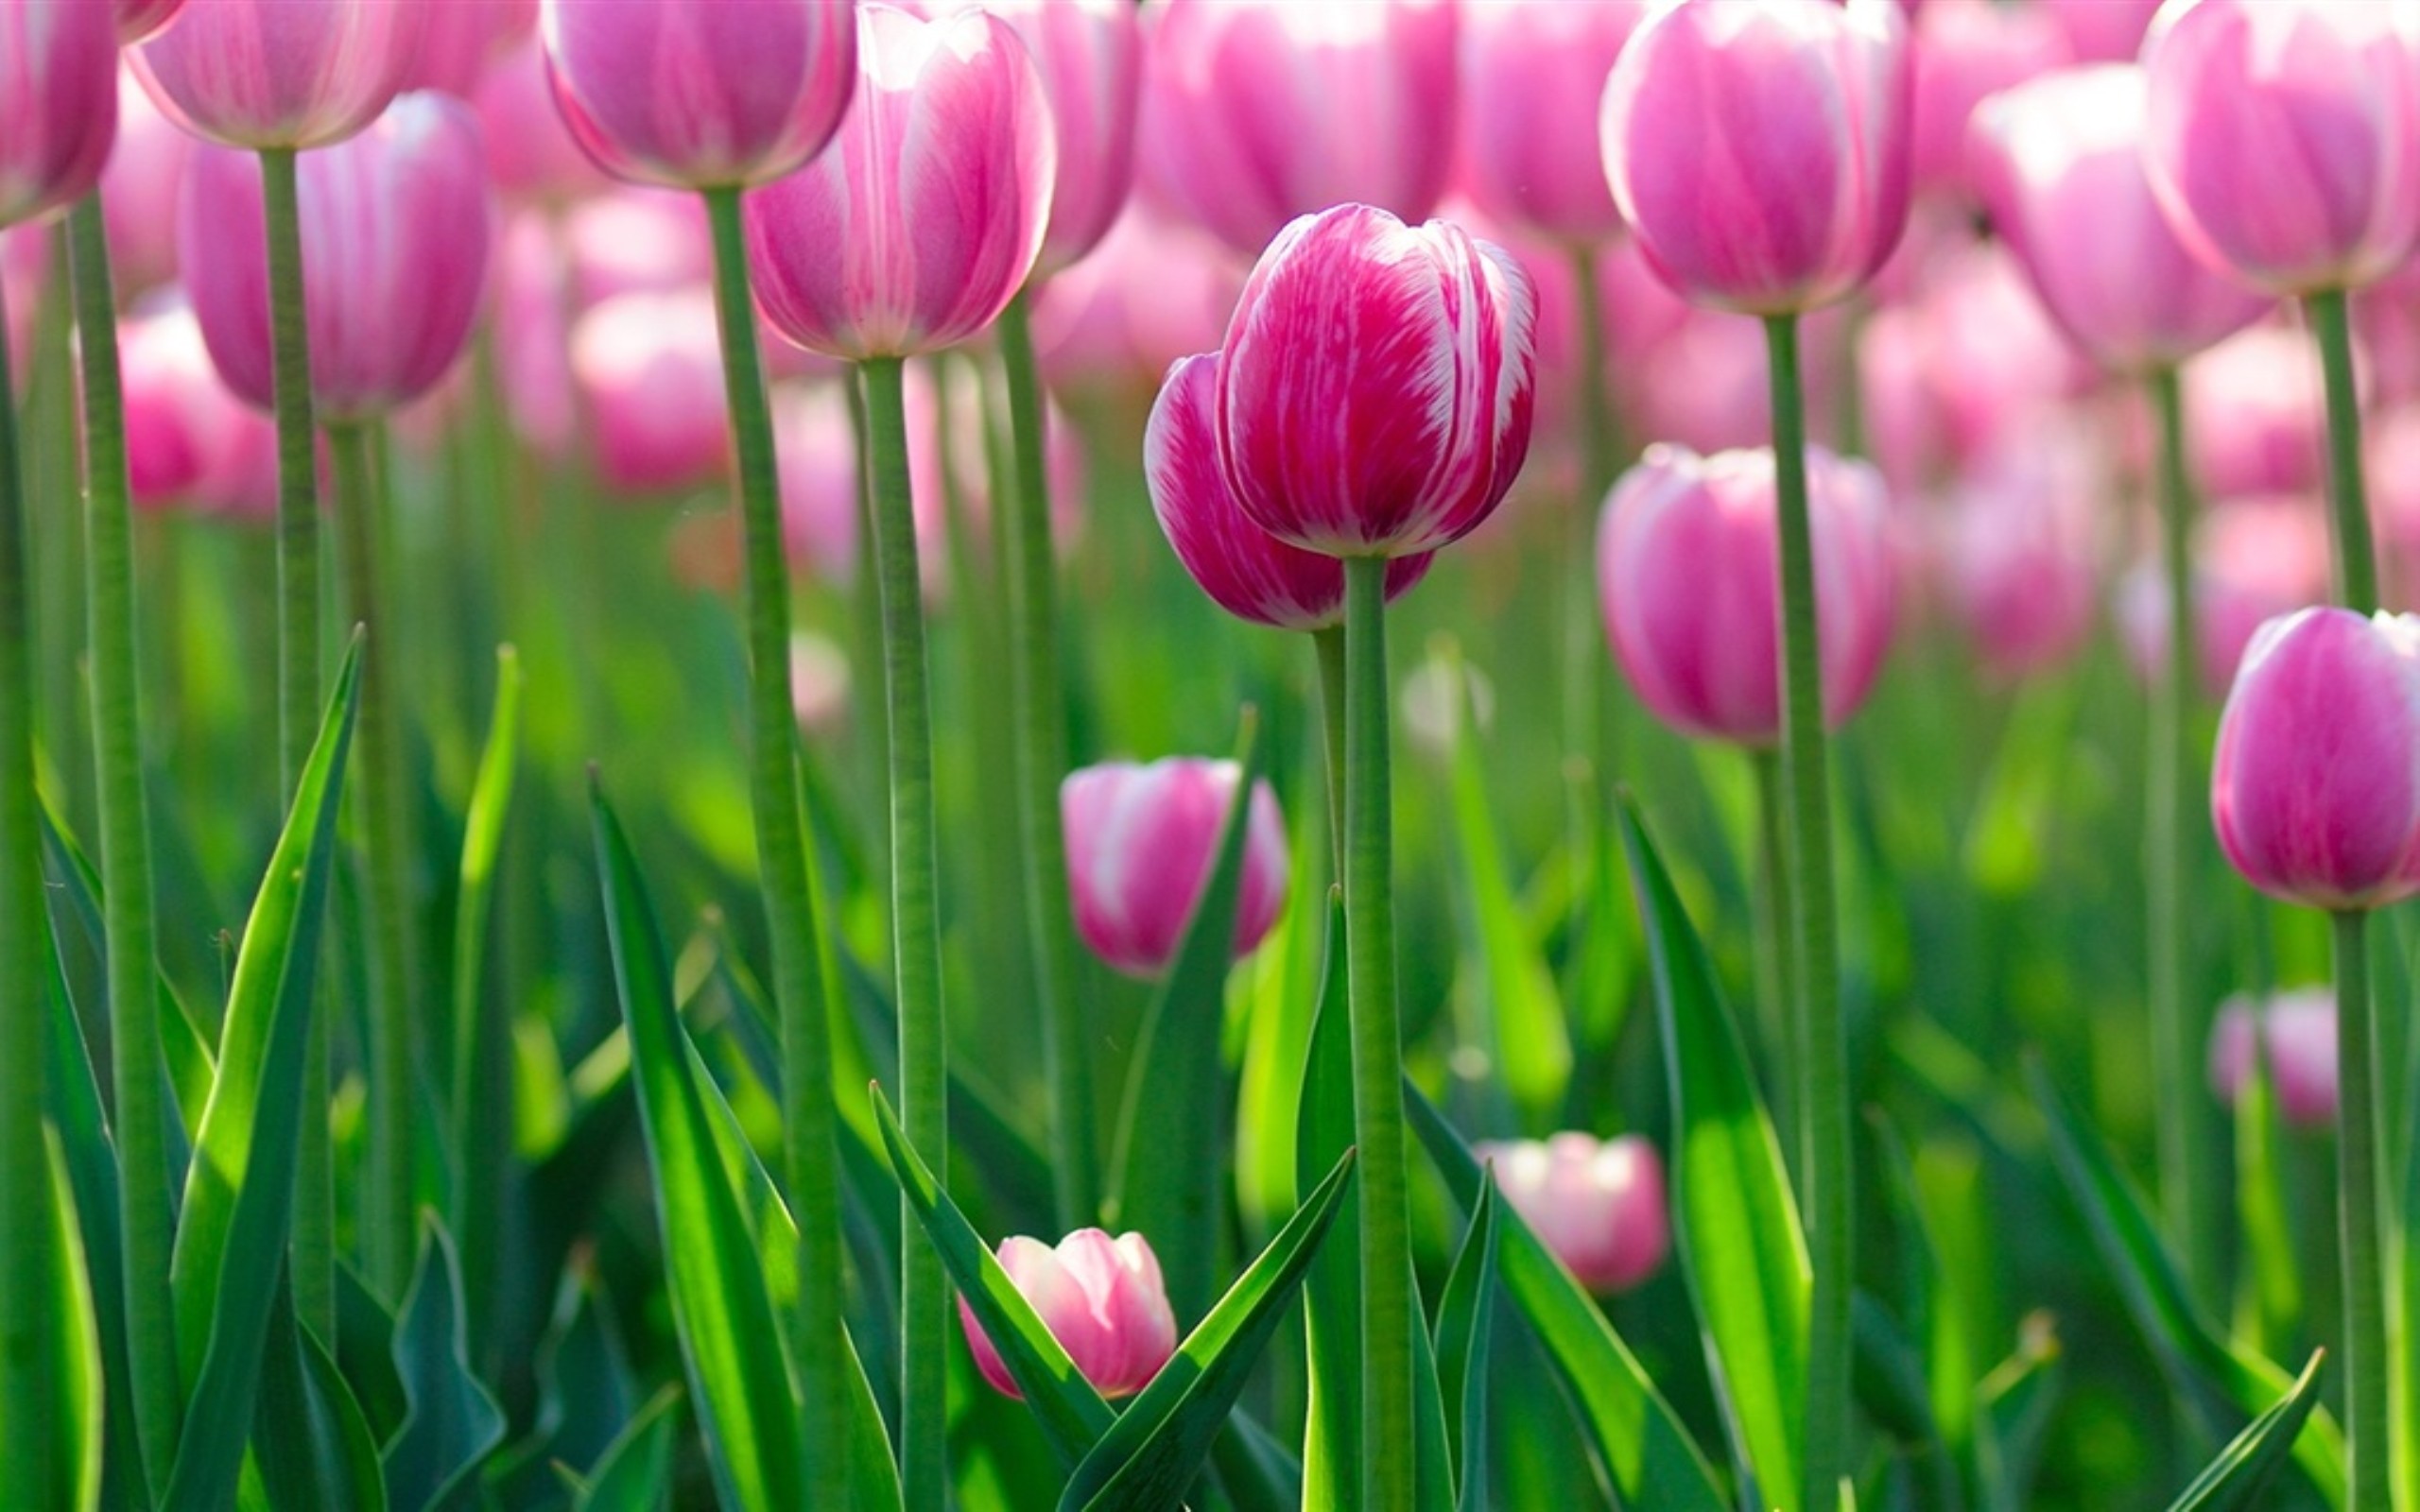 Обои на телефон красивые тюльпаны. Цветы тюльпаны. Красивые тюльпаны. Розовые тюльпаны.